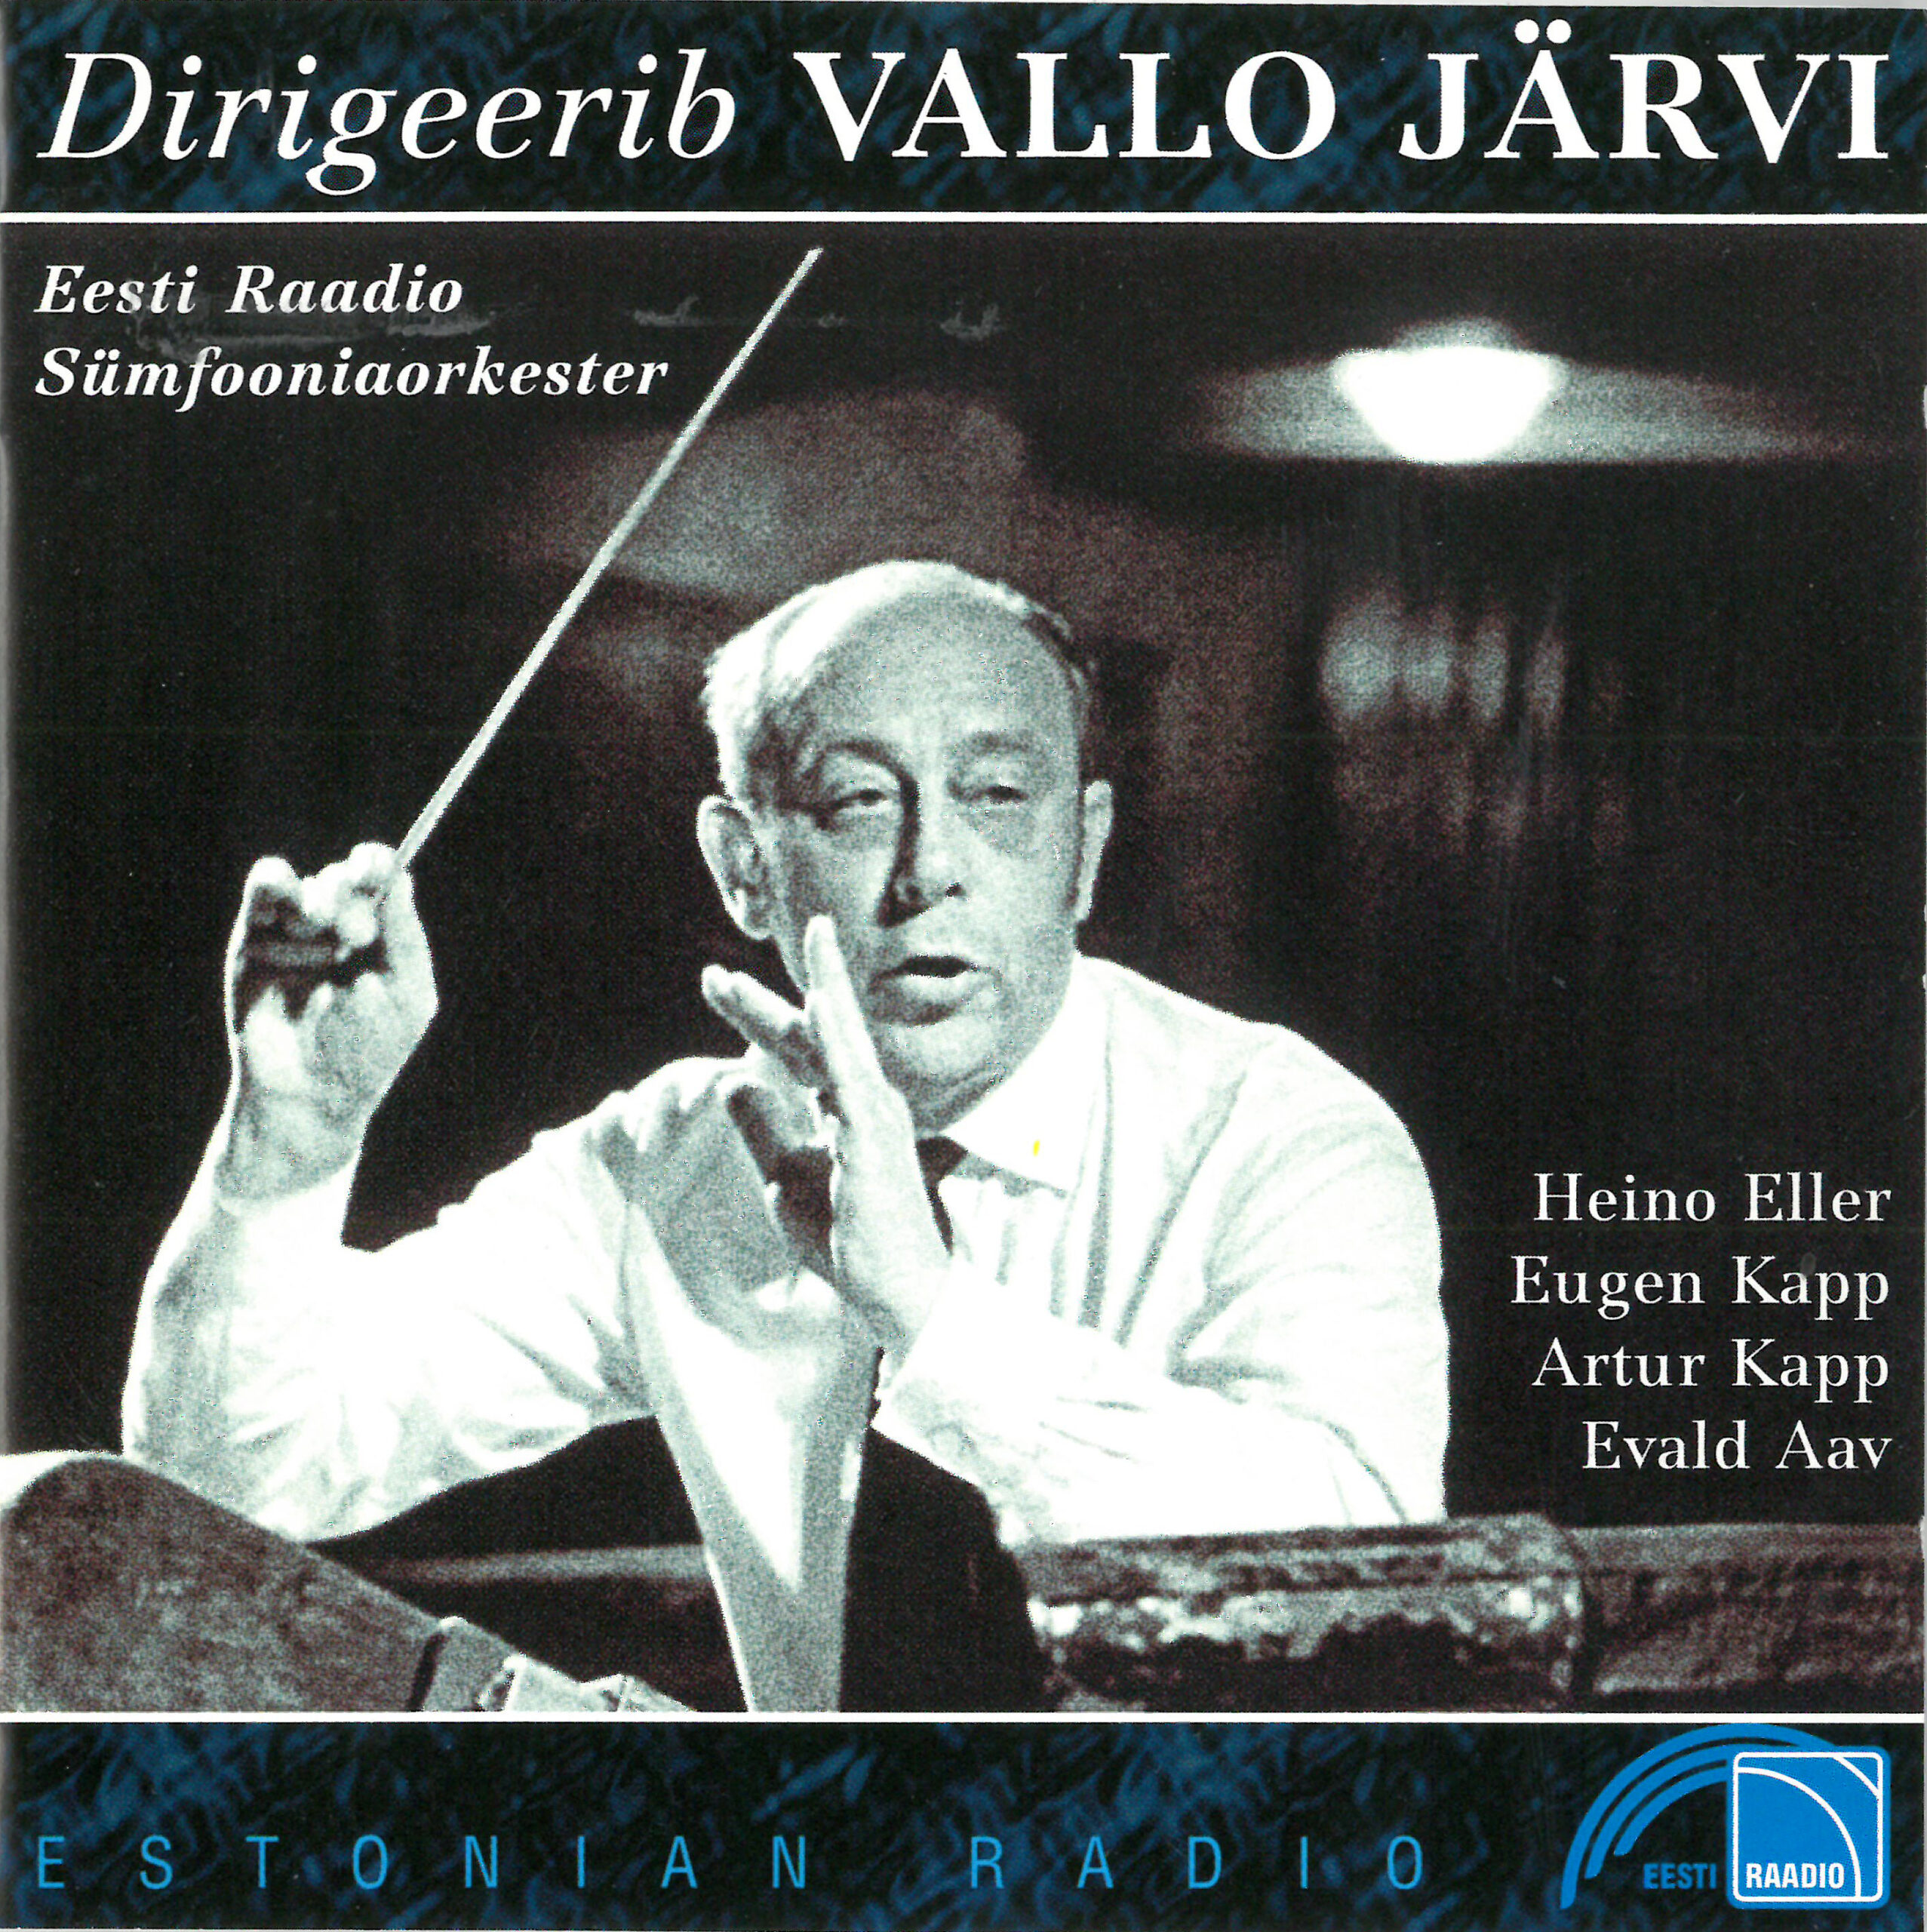 DIRIGEERIB VALLO JÄRVI. Eesti Raadio 1997